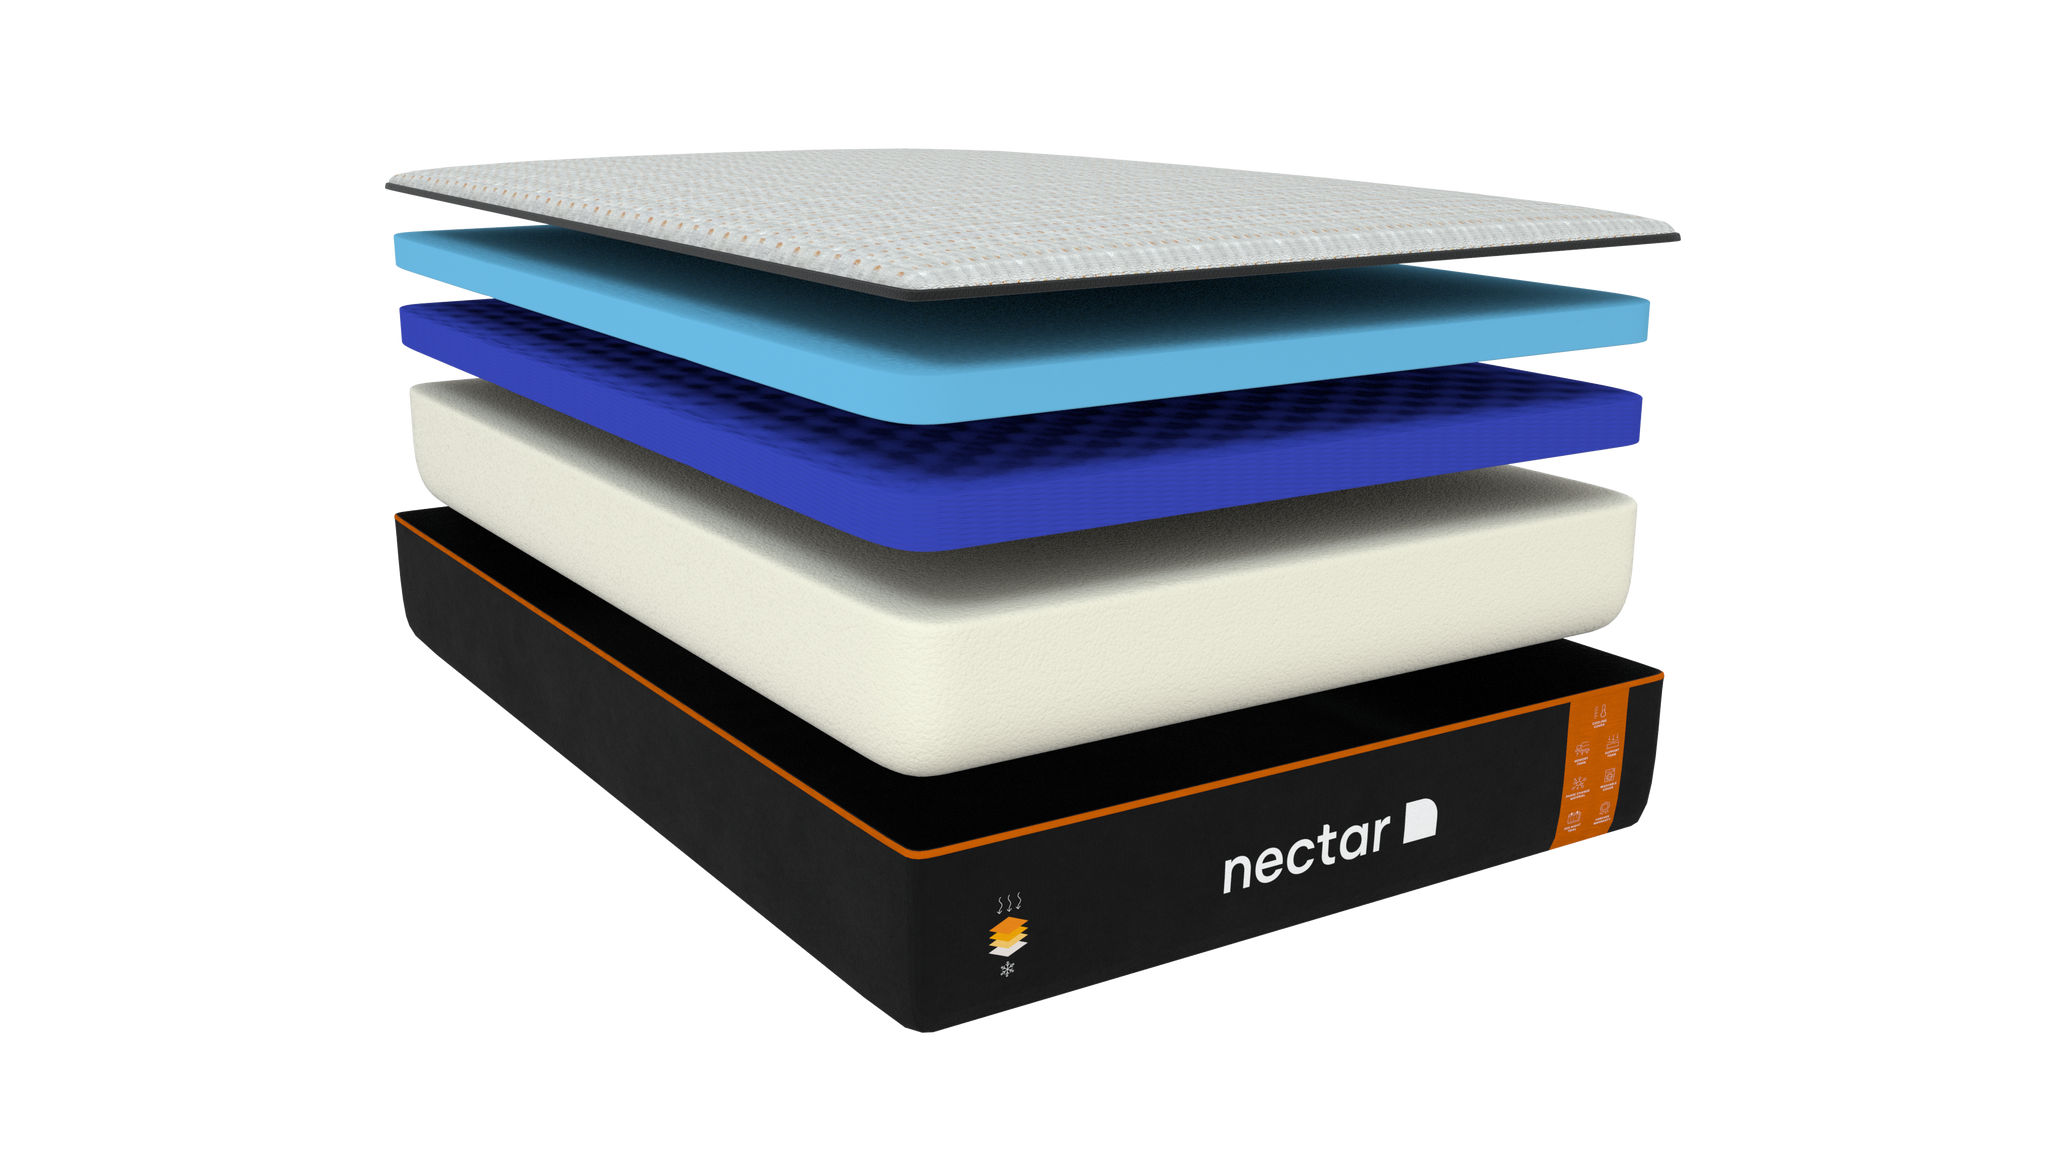 nectar premier mattress